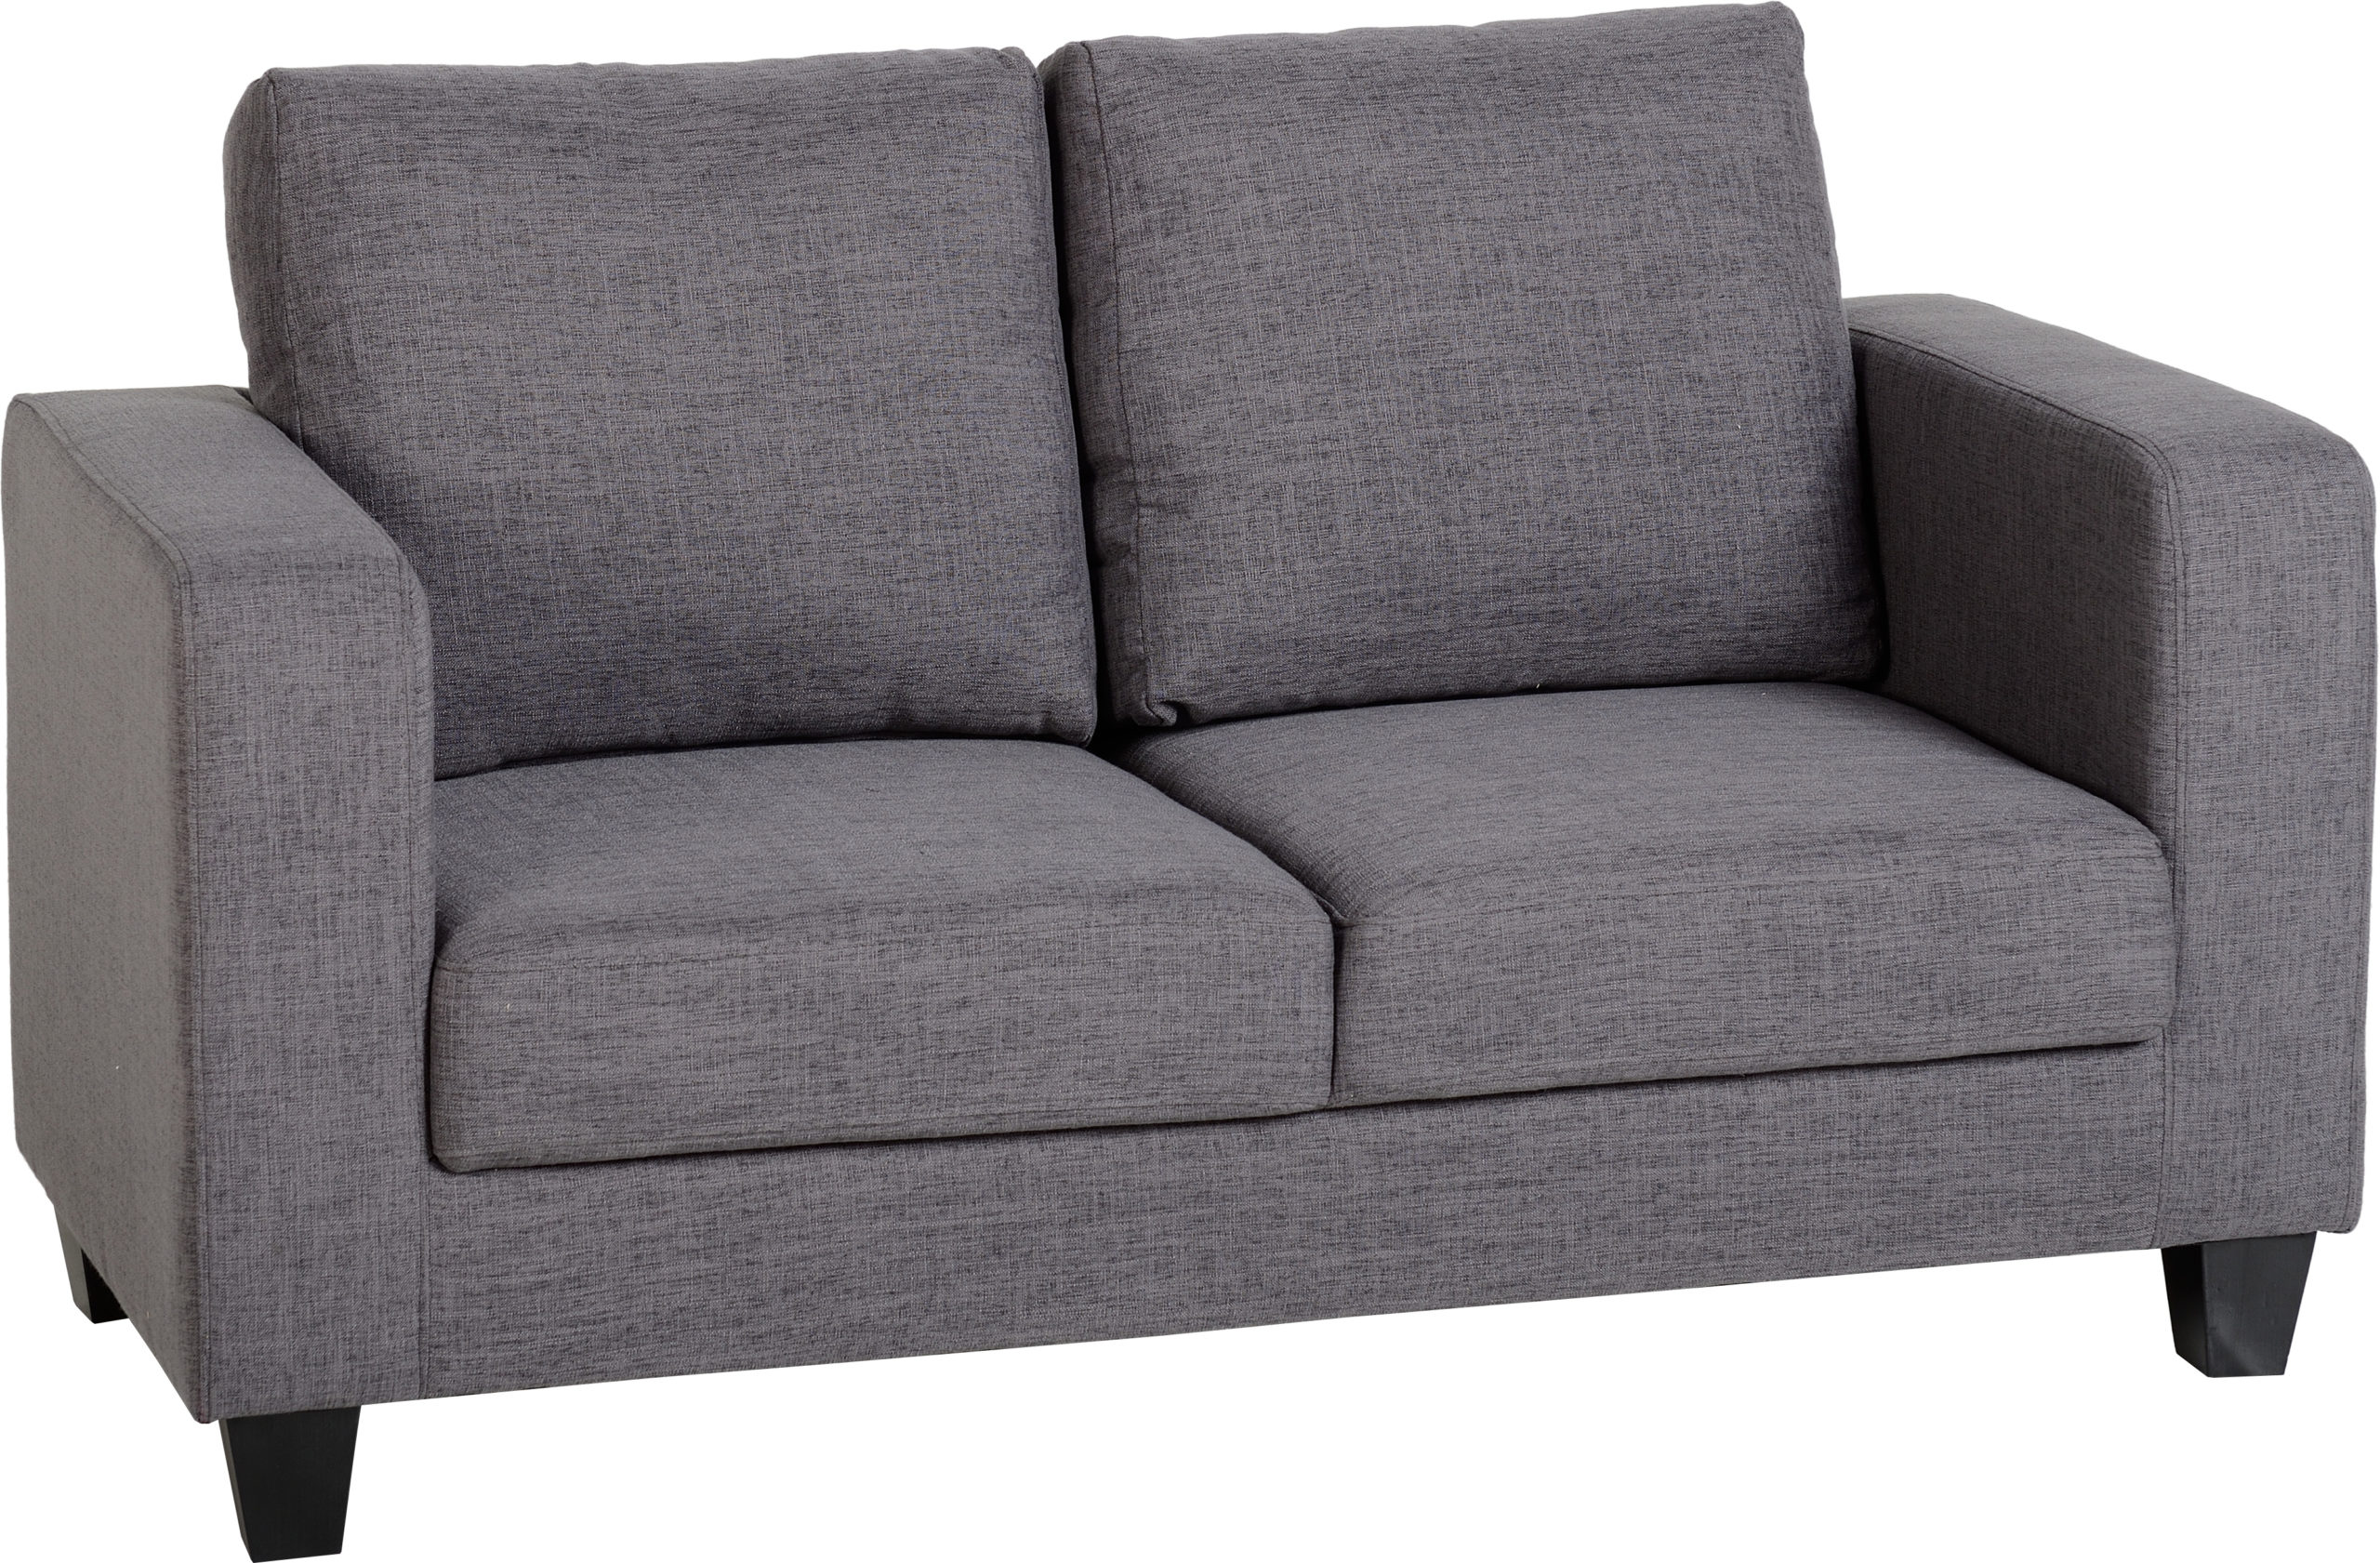 sofa set at low price        <h3 class=